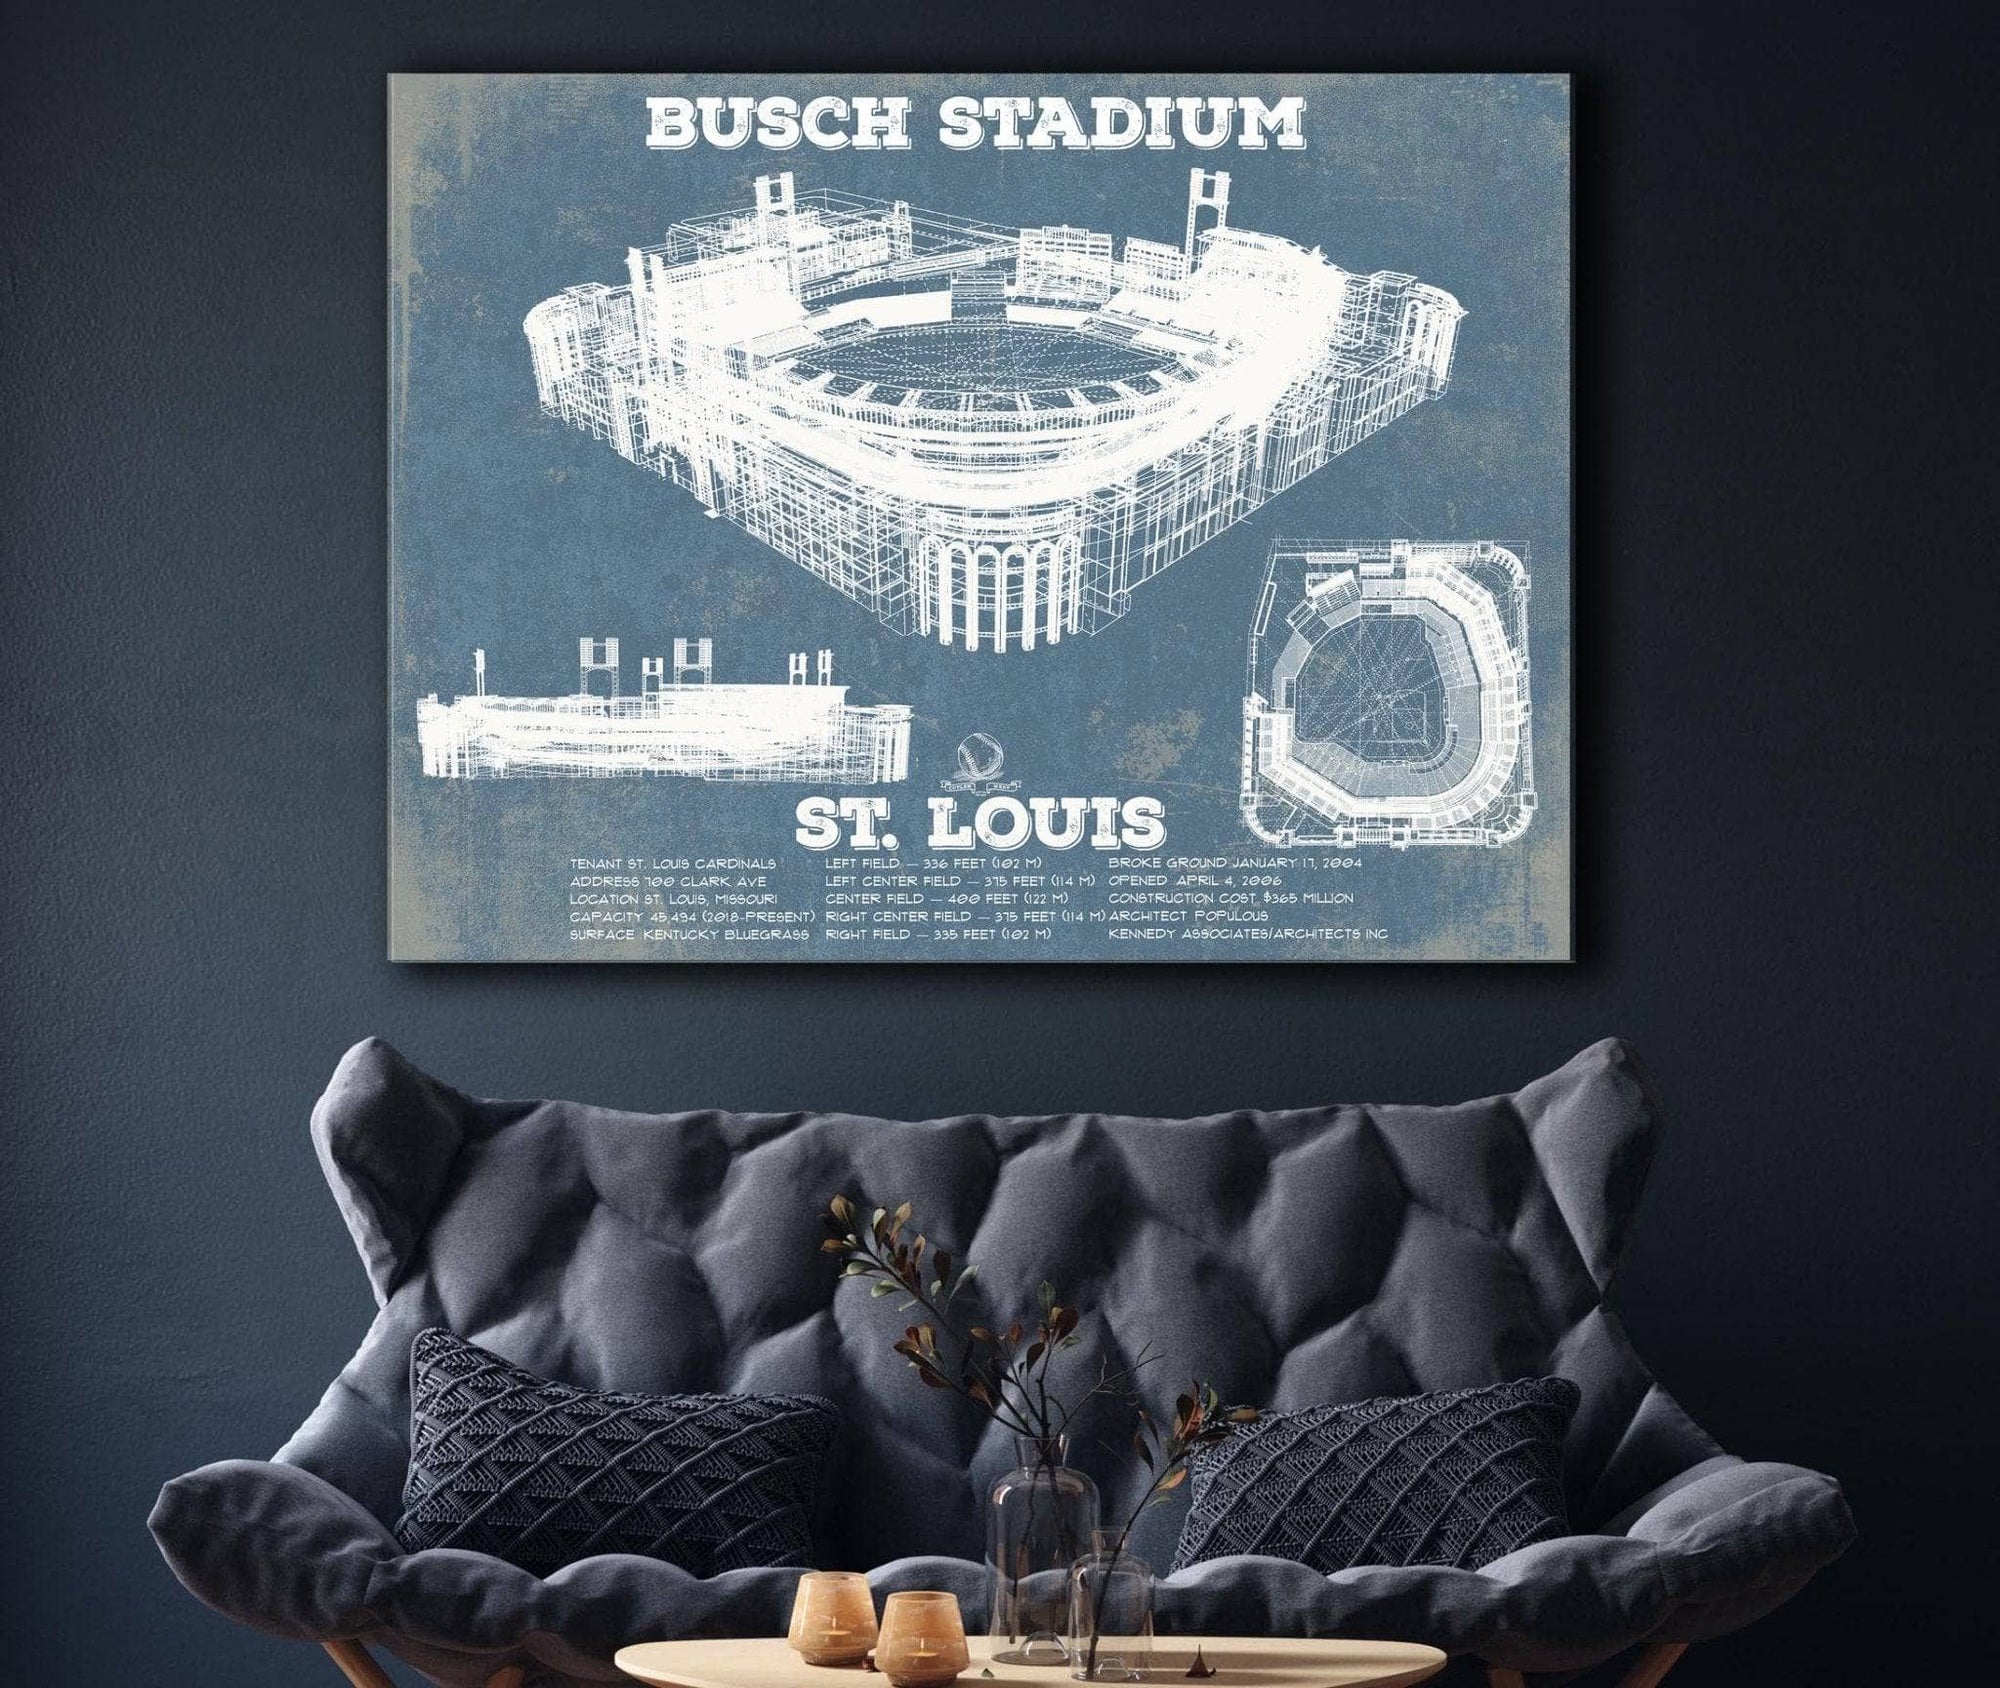 St Louis Cardinals Busch Stadium Poster Framed Room Decor 